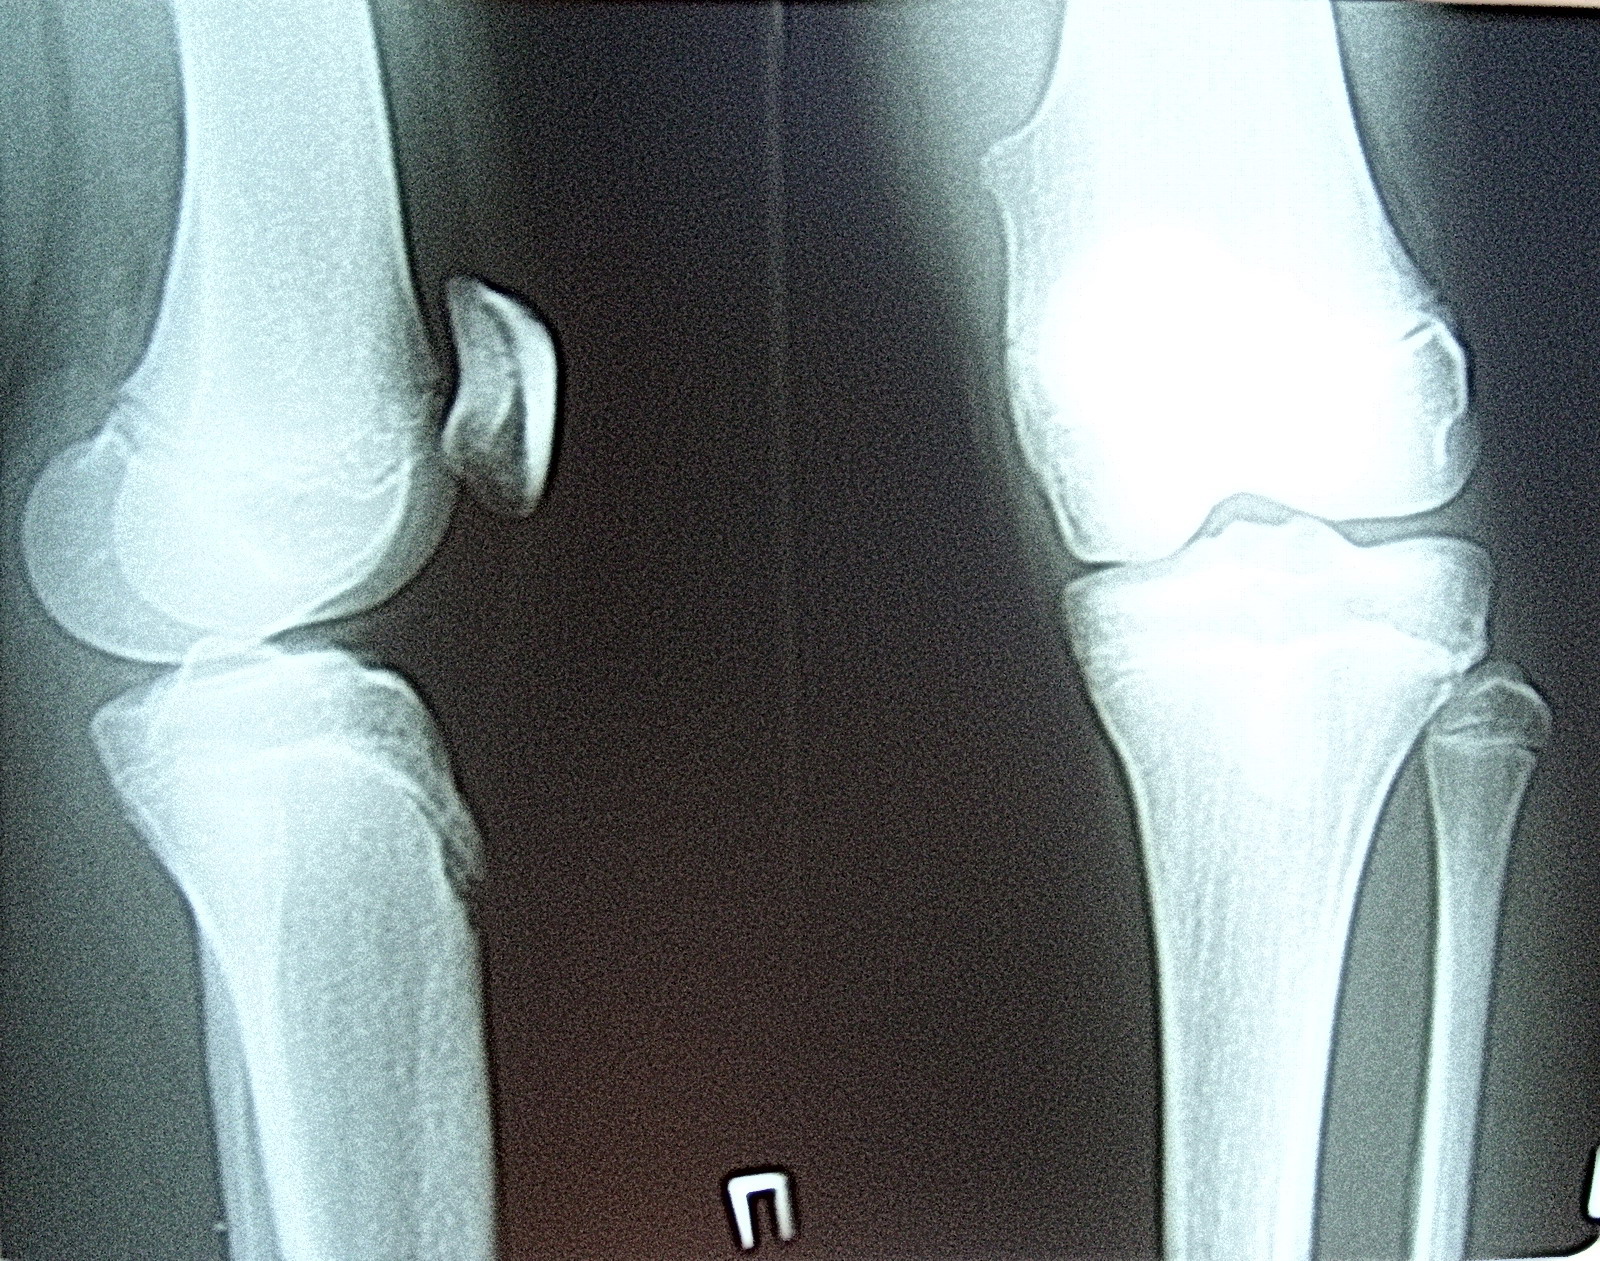 Фото здорового коленного сустава человека рентген